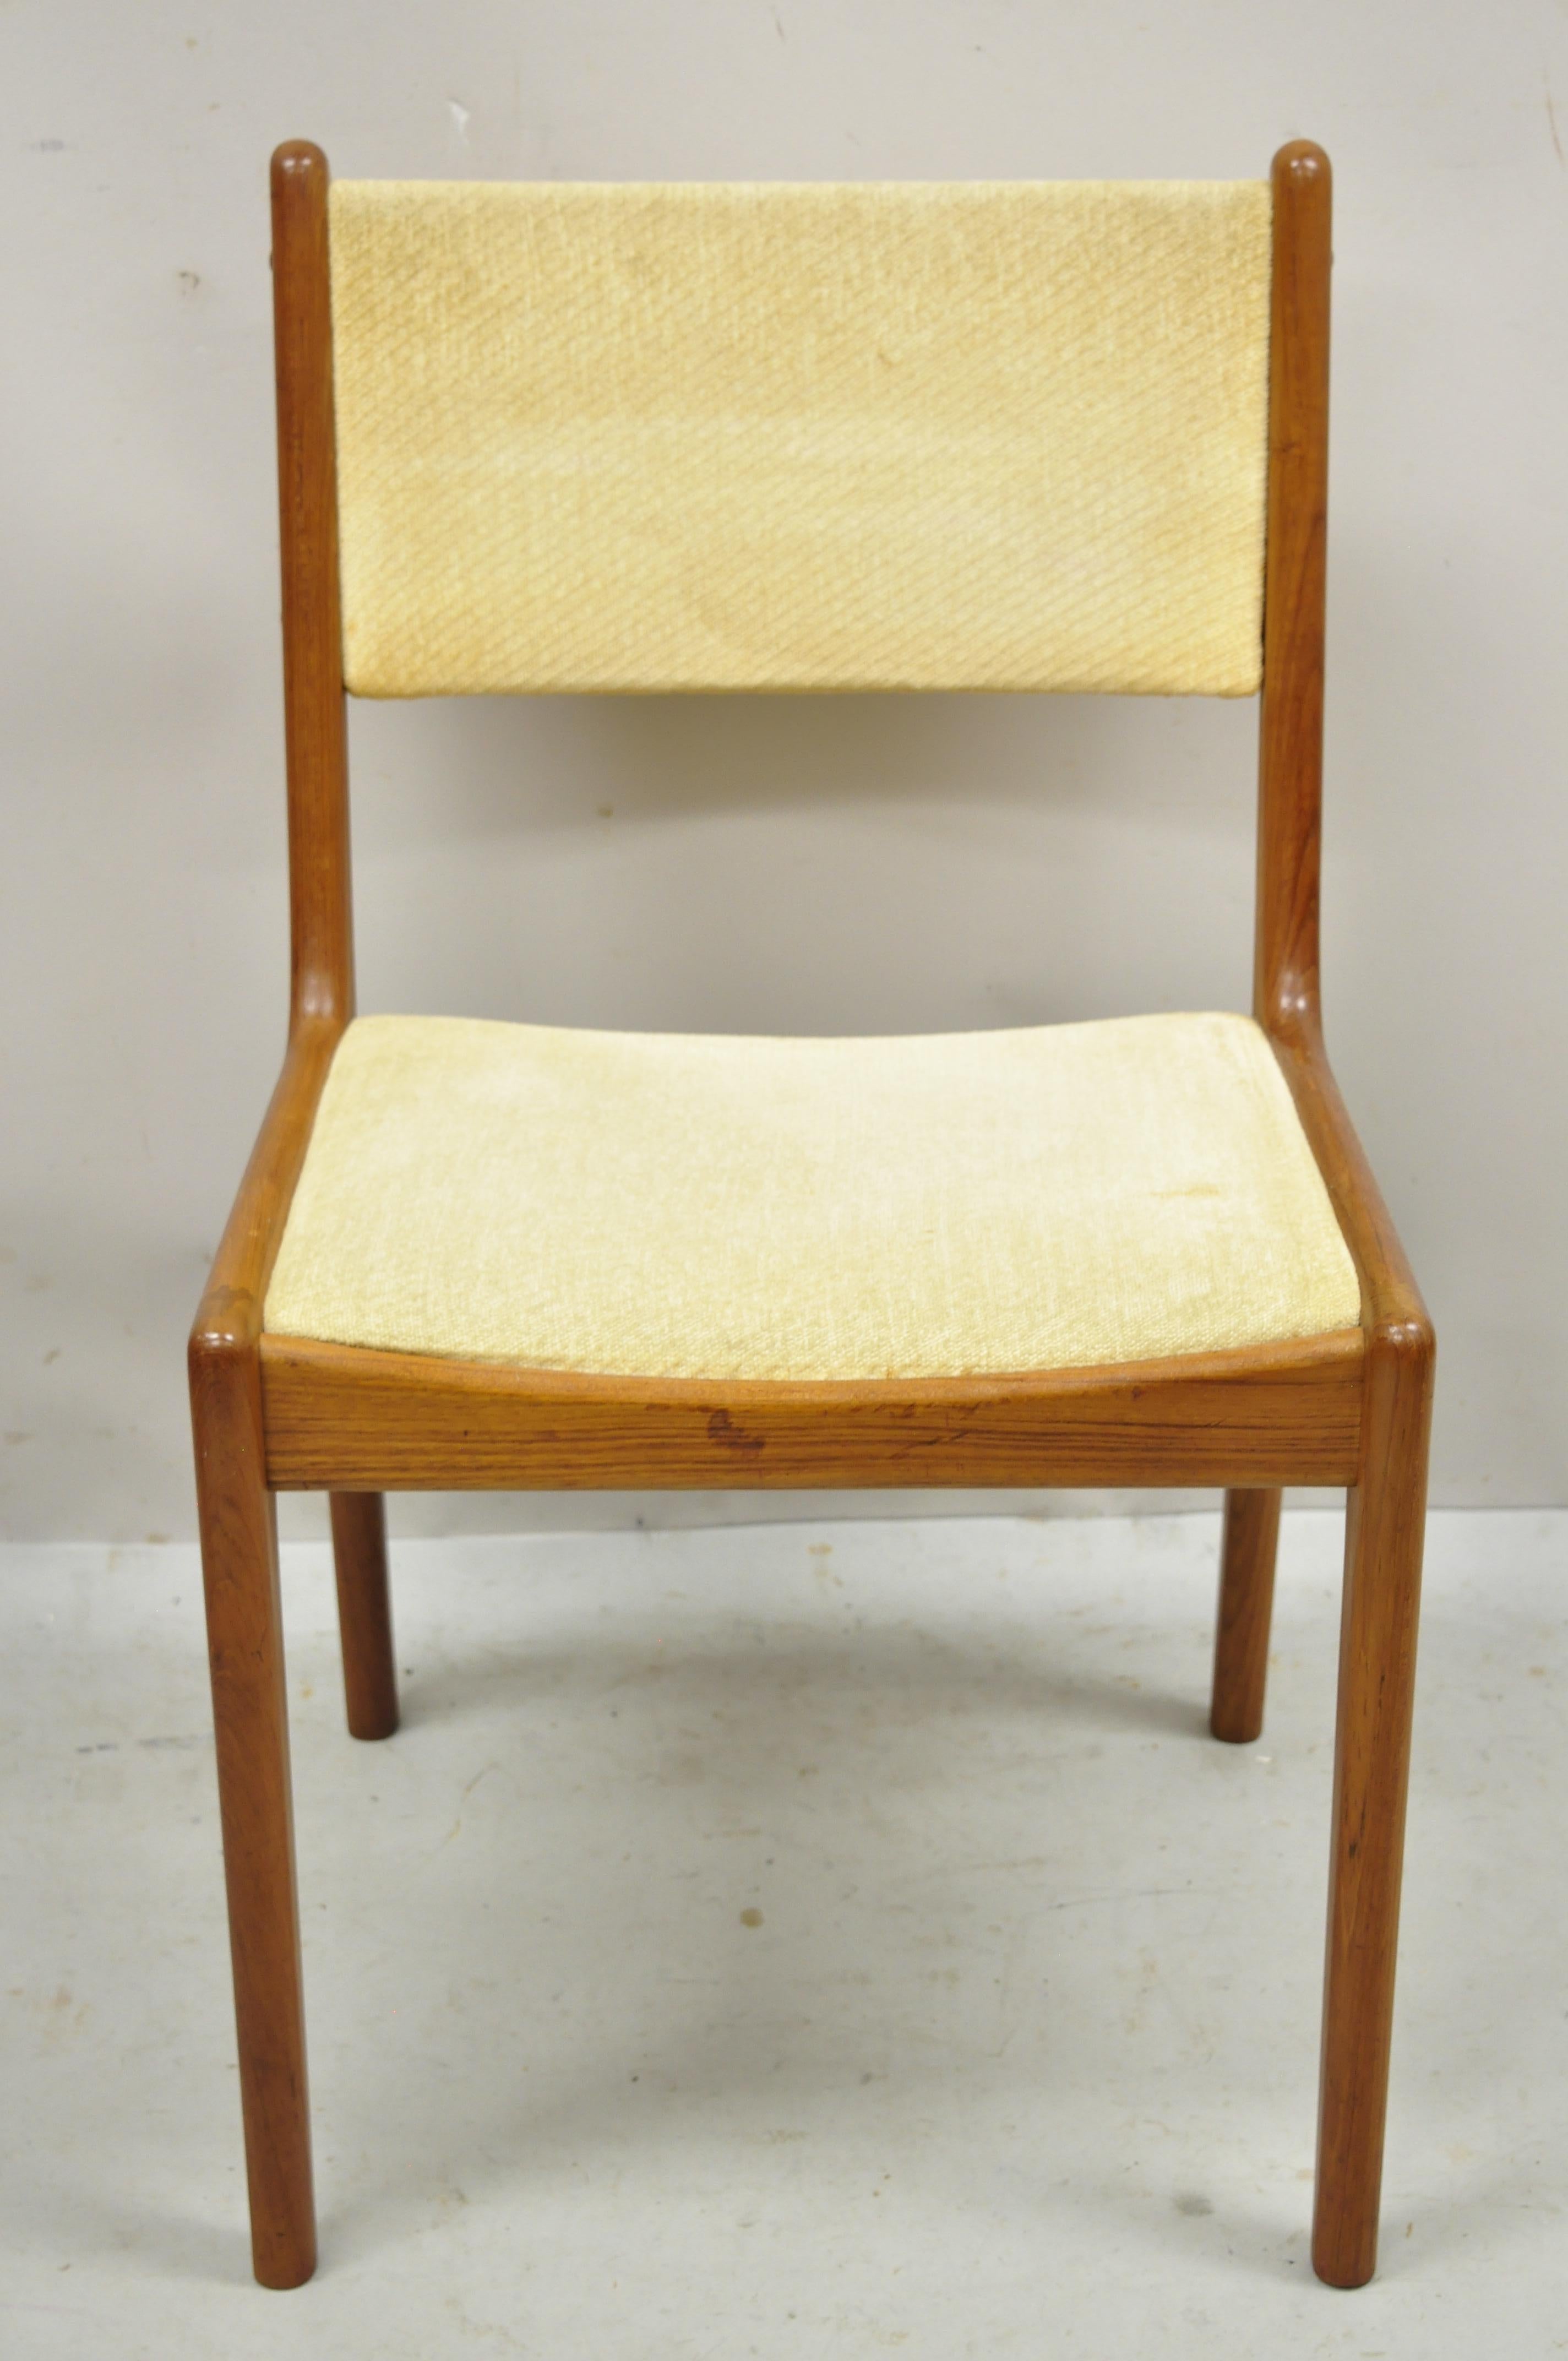 Vintage Mid-Century Modern chaise de salle à manger de style danois en teck par Sun Furniture. Cet article se caractérise par une construction en bois massif, un beau grain de bois, un label original, des pieds effilés, un très bel article vintage,